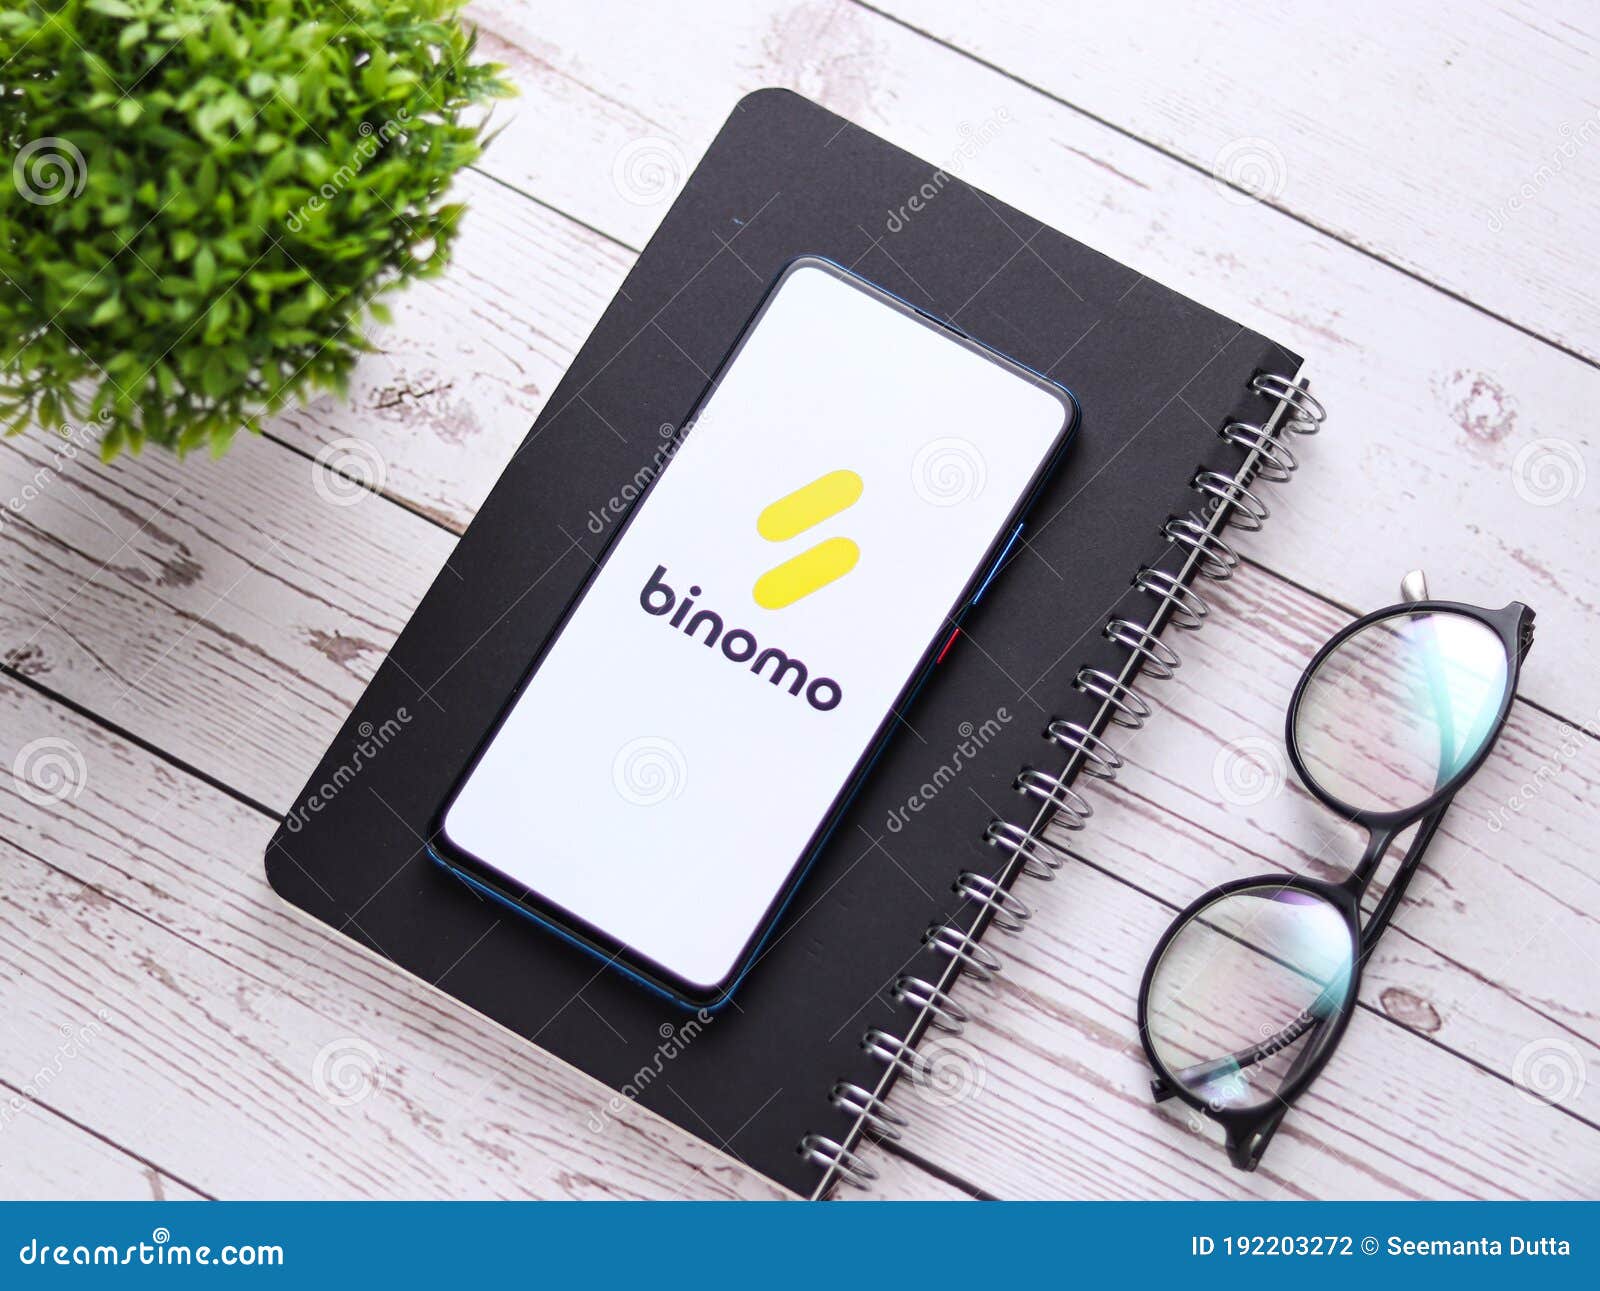 About: Binomo | Invest Trade (Google Play version) | | Apptopia